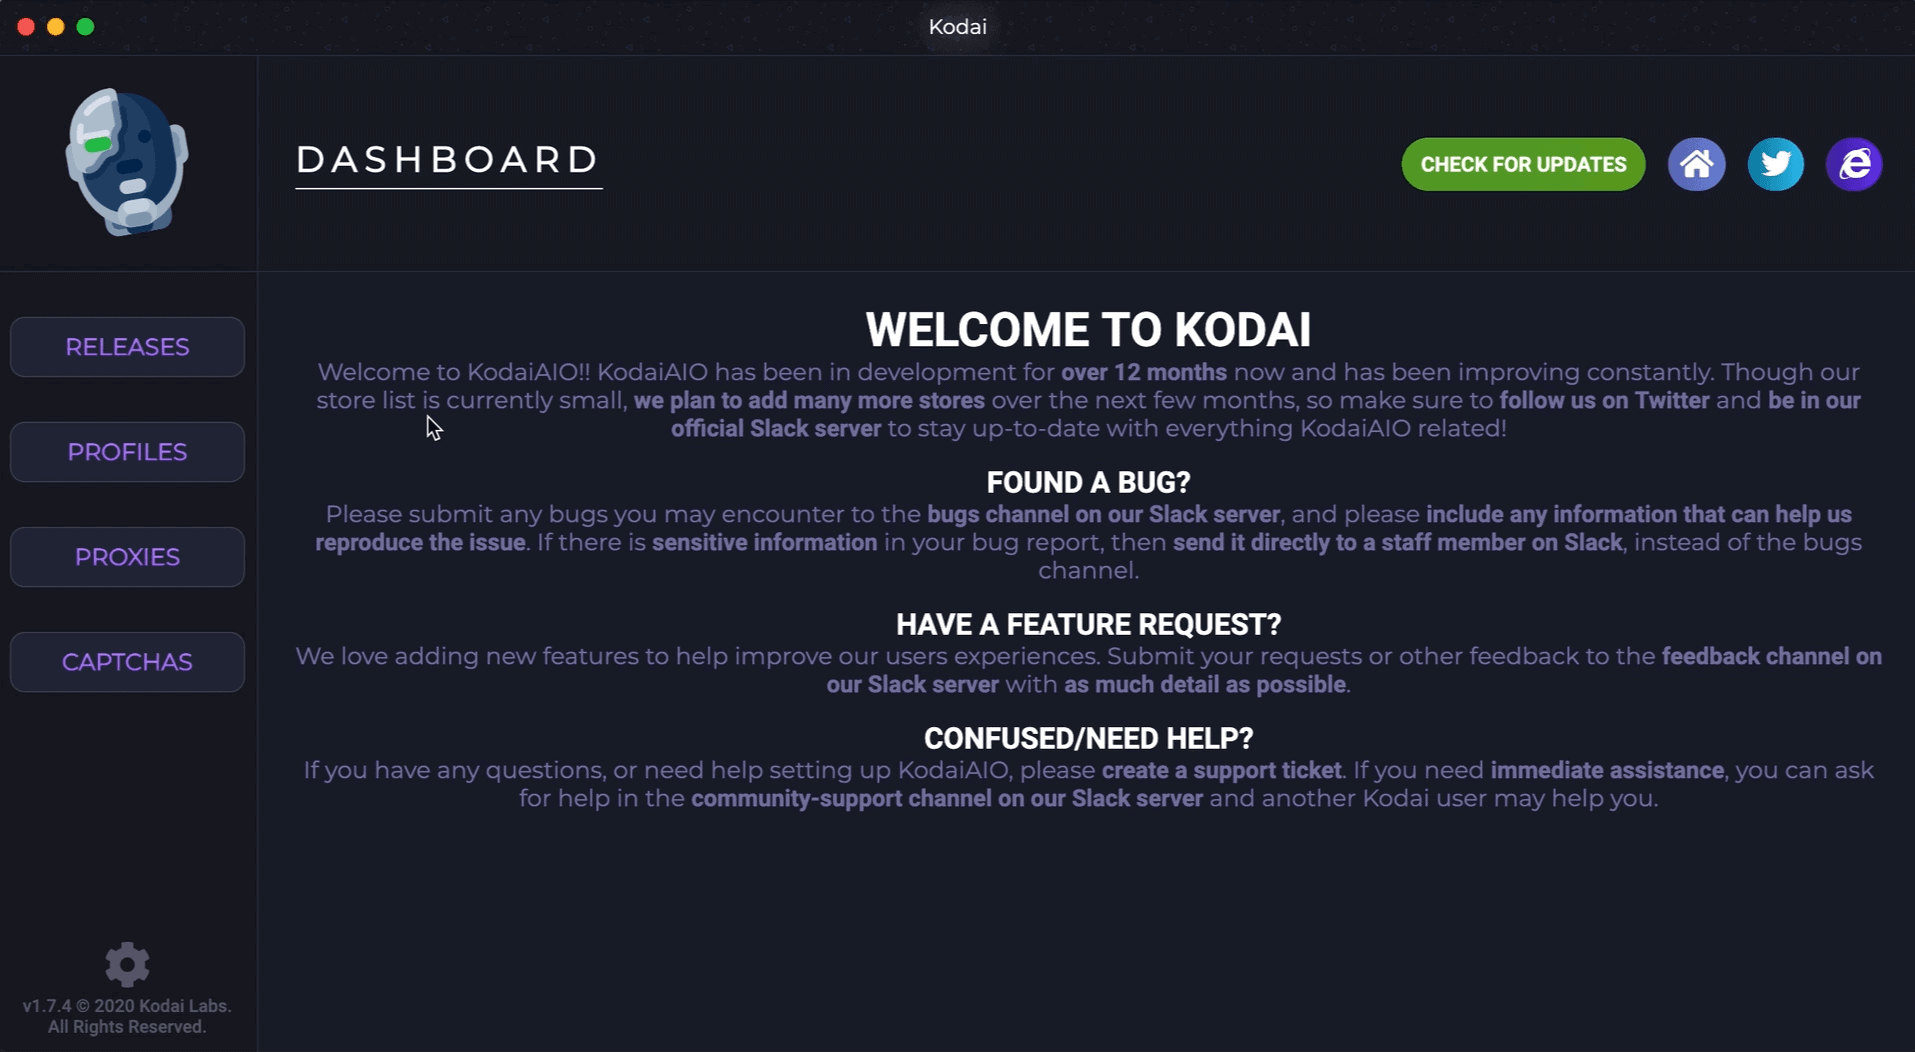 KODAI dashboard